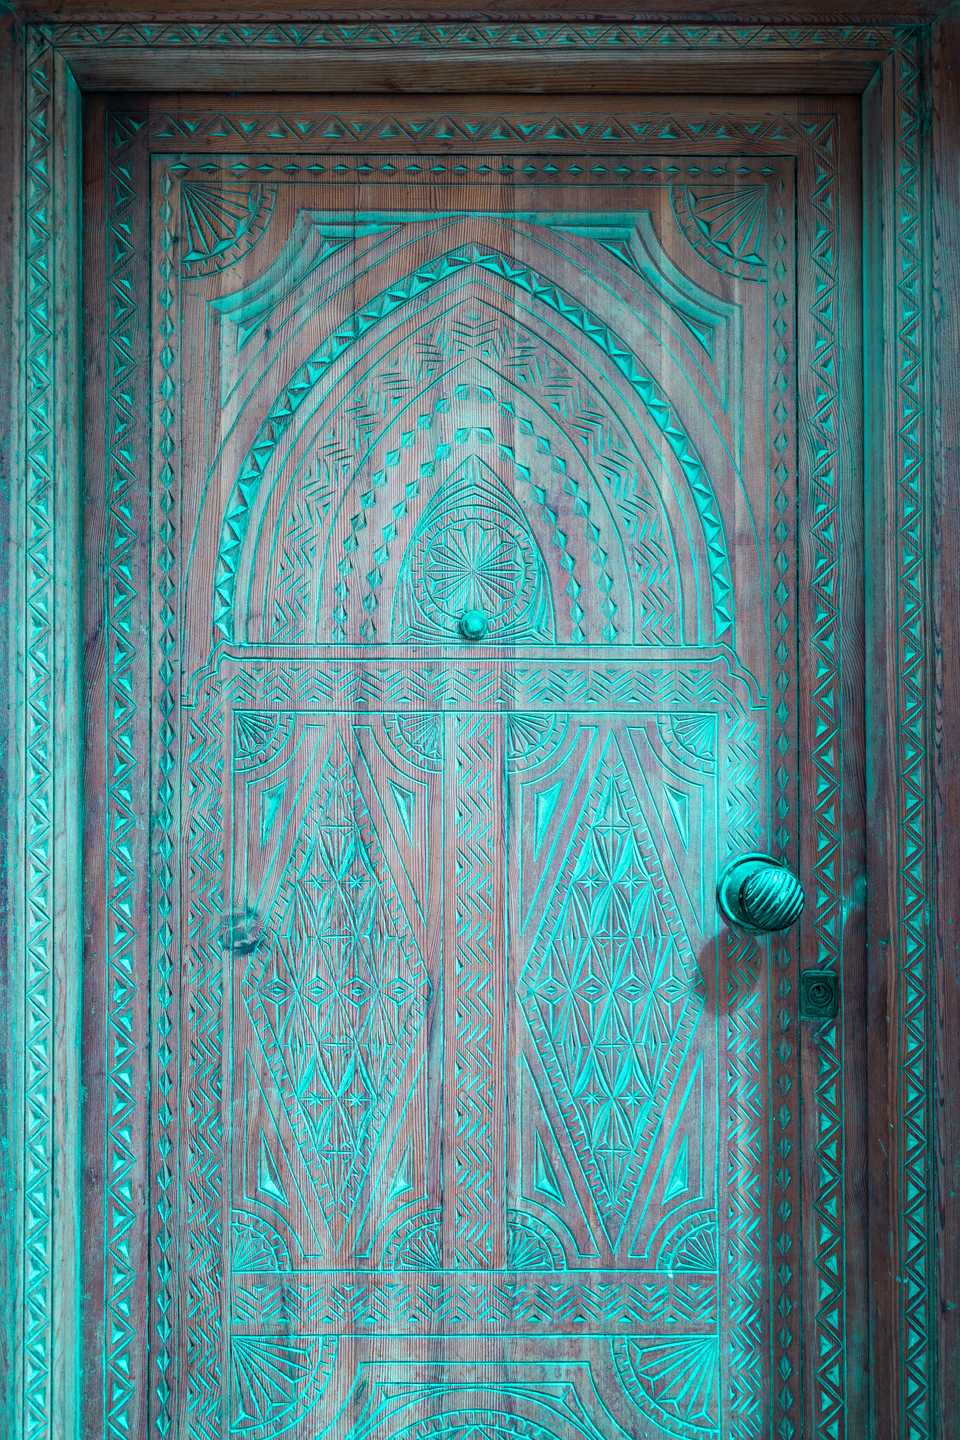 World's most intricate door